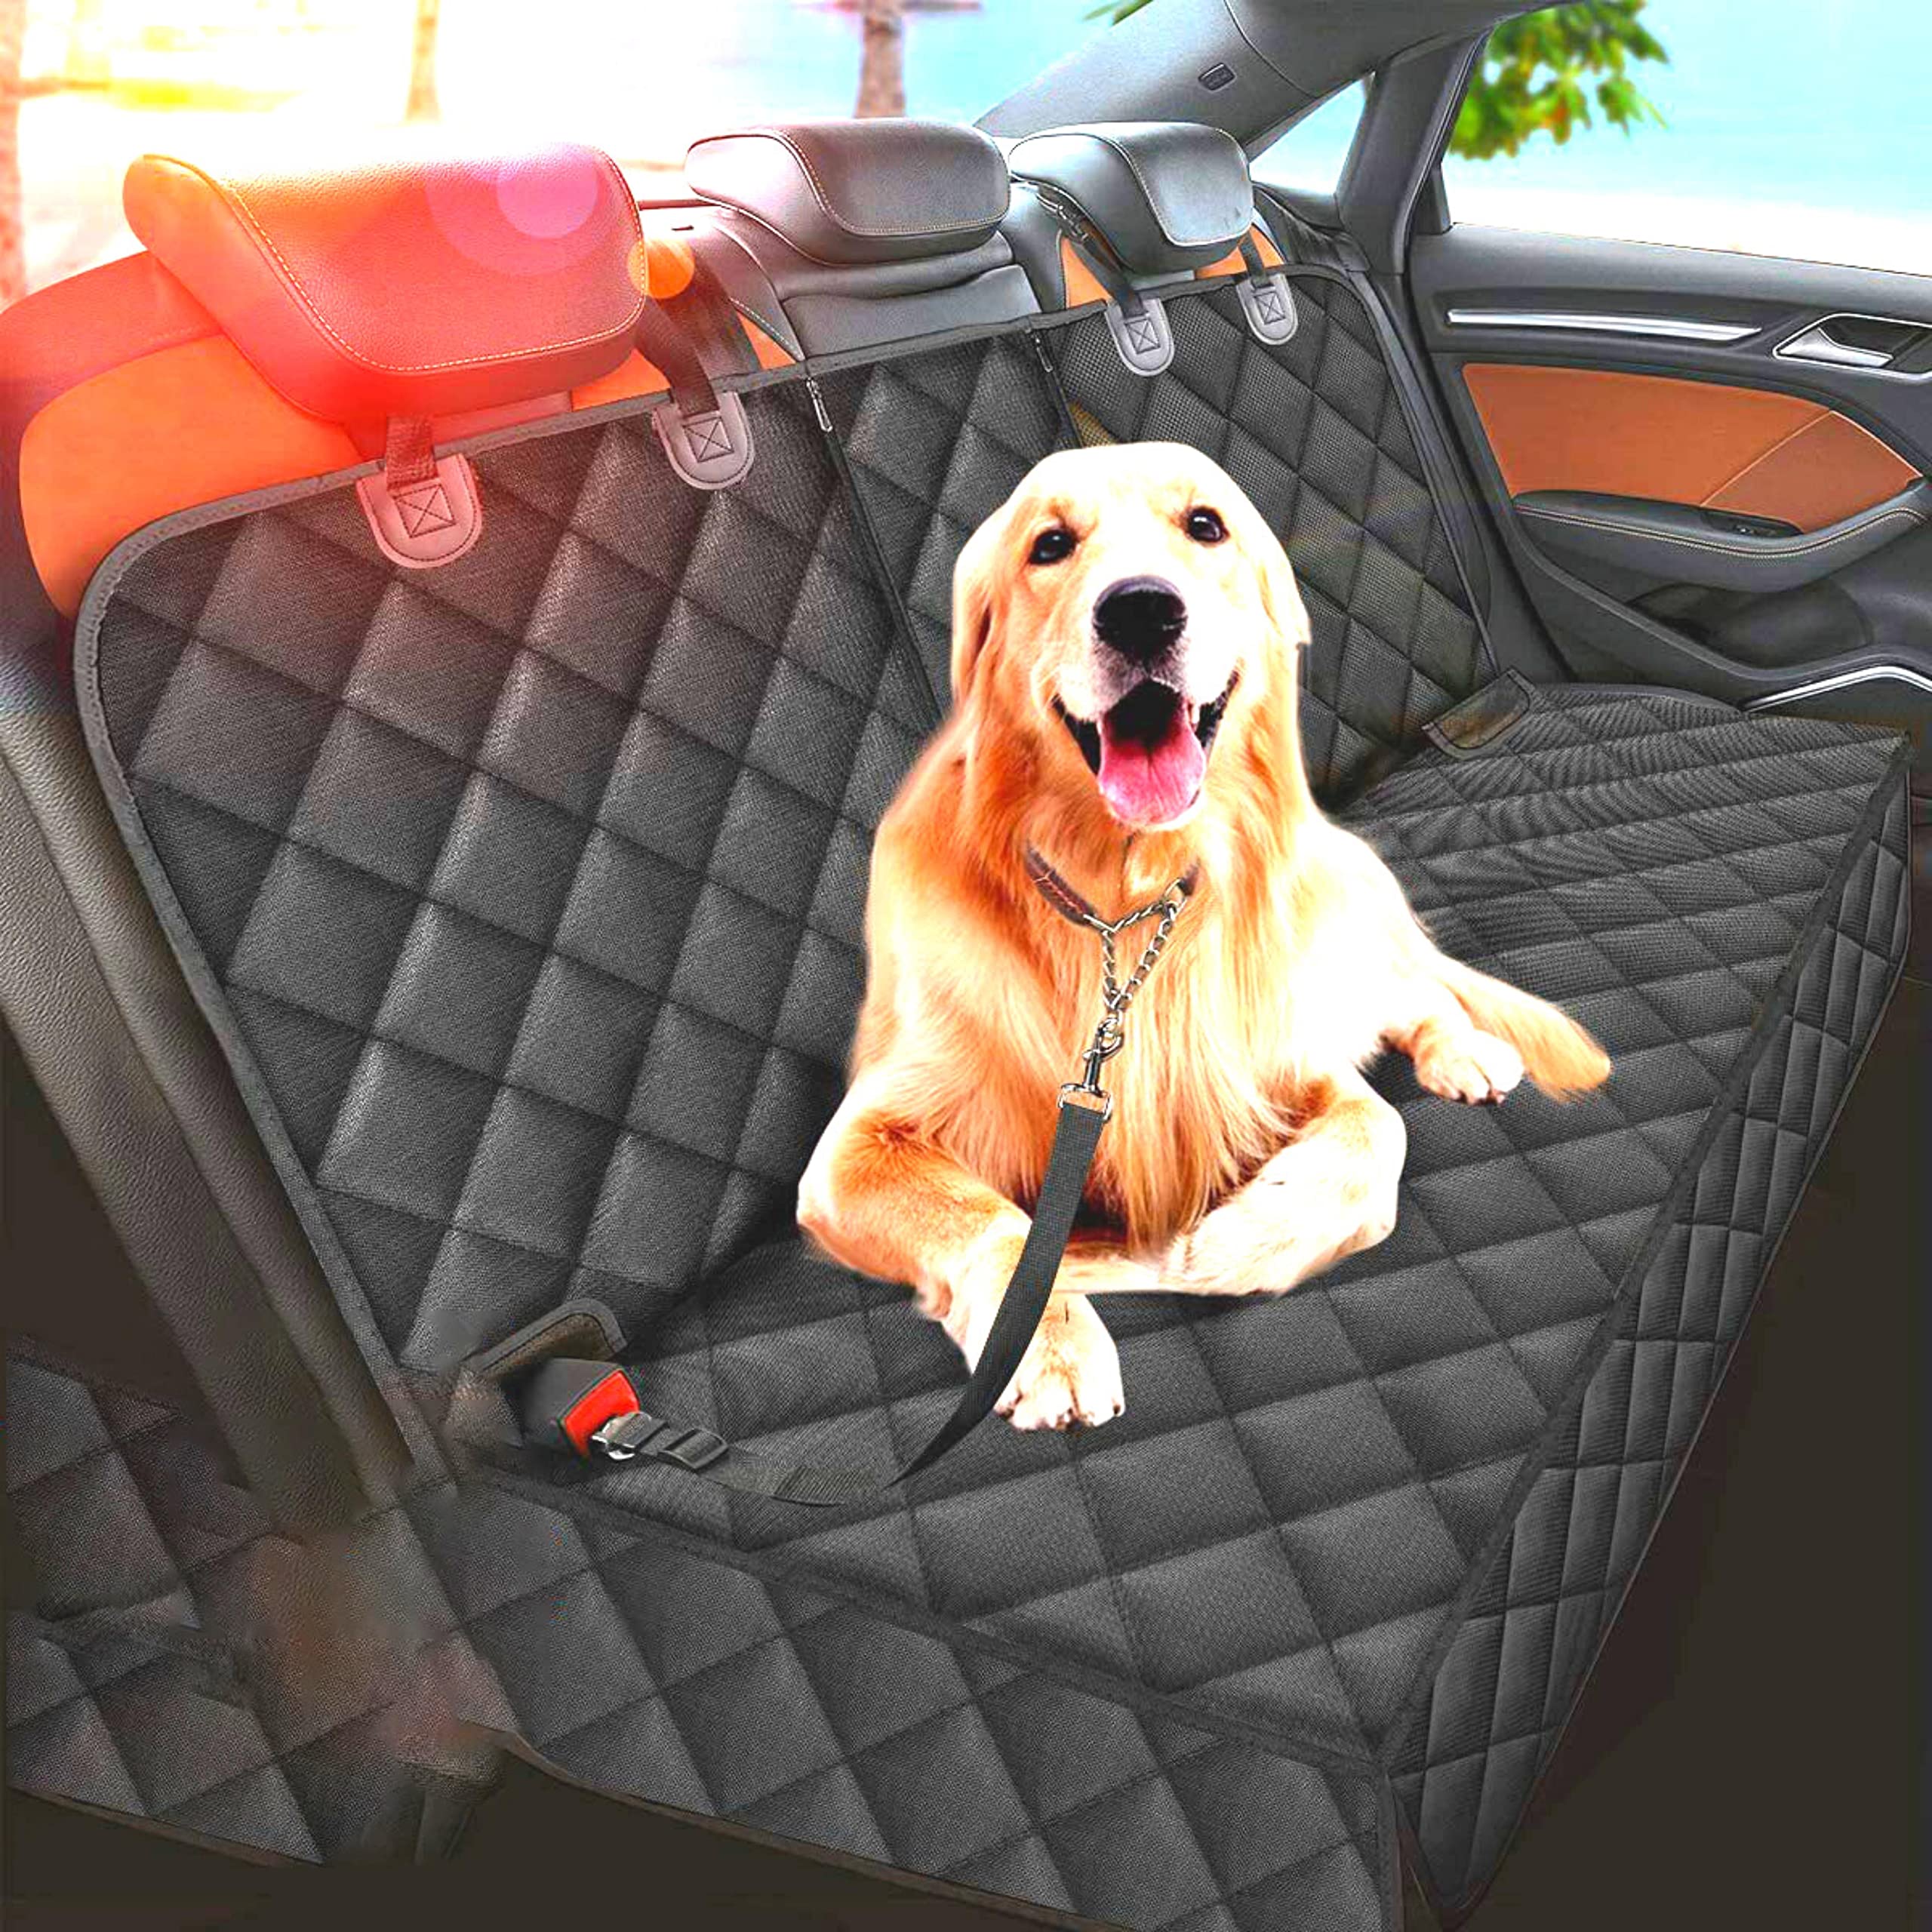 MCA (Mes chers amis) ペット用ドライブシート 犬用ドライブシート ドライブシート 防水シート ペット 犬 犬用 後部座席 後部座席用シート シートカバー ドライブ用